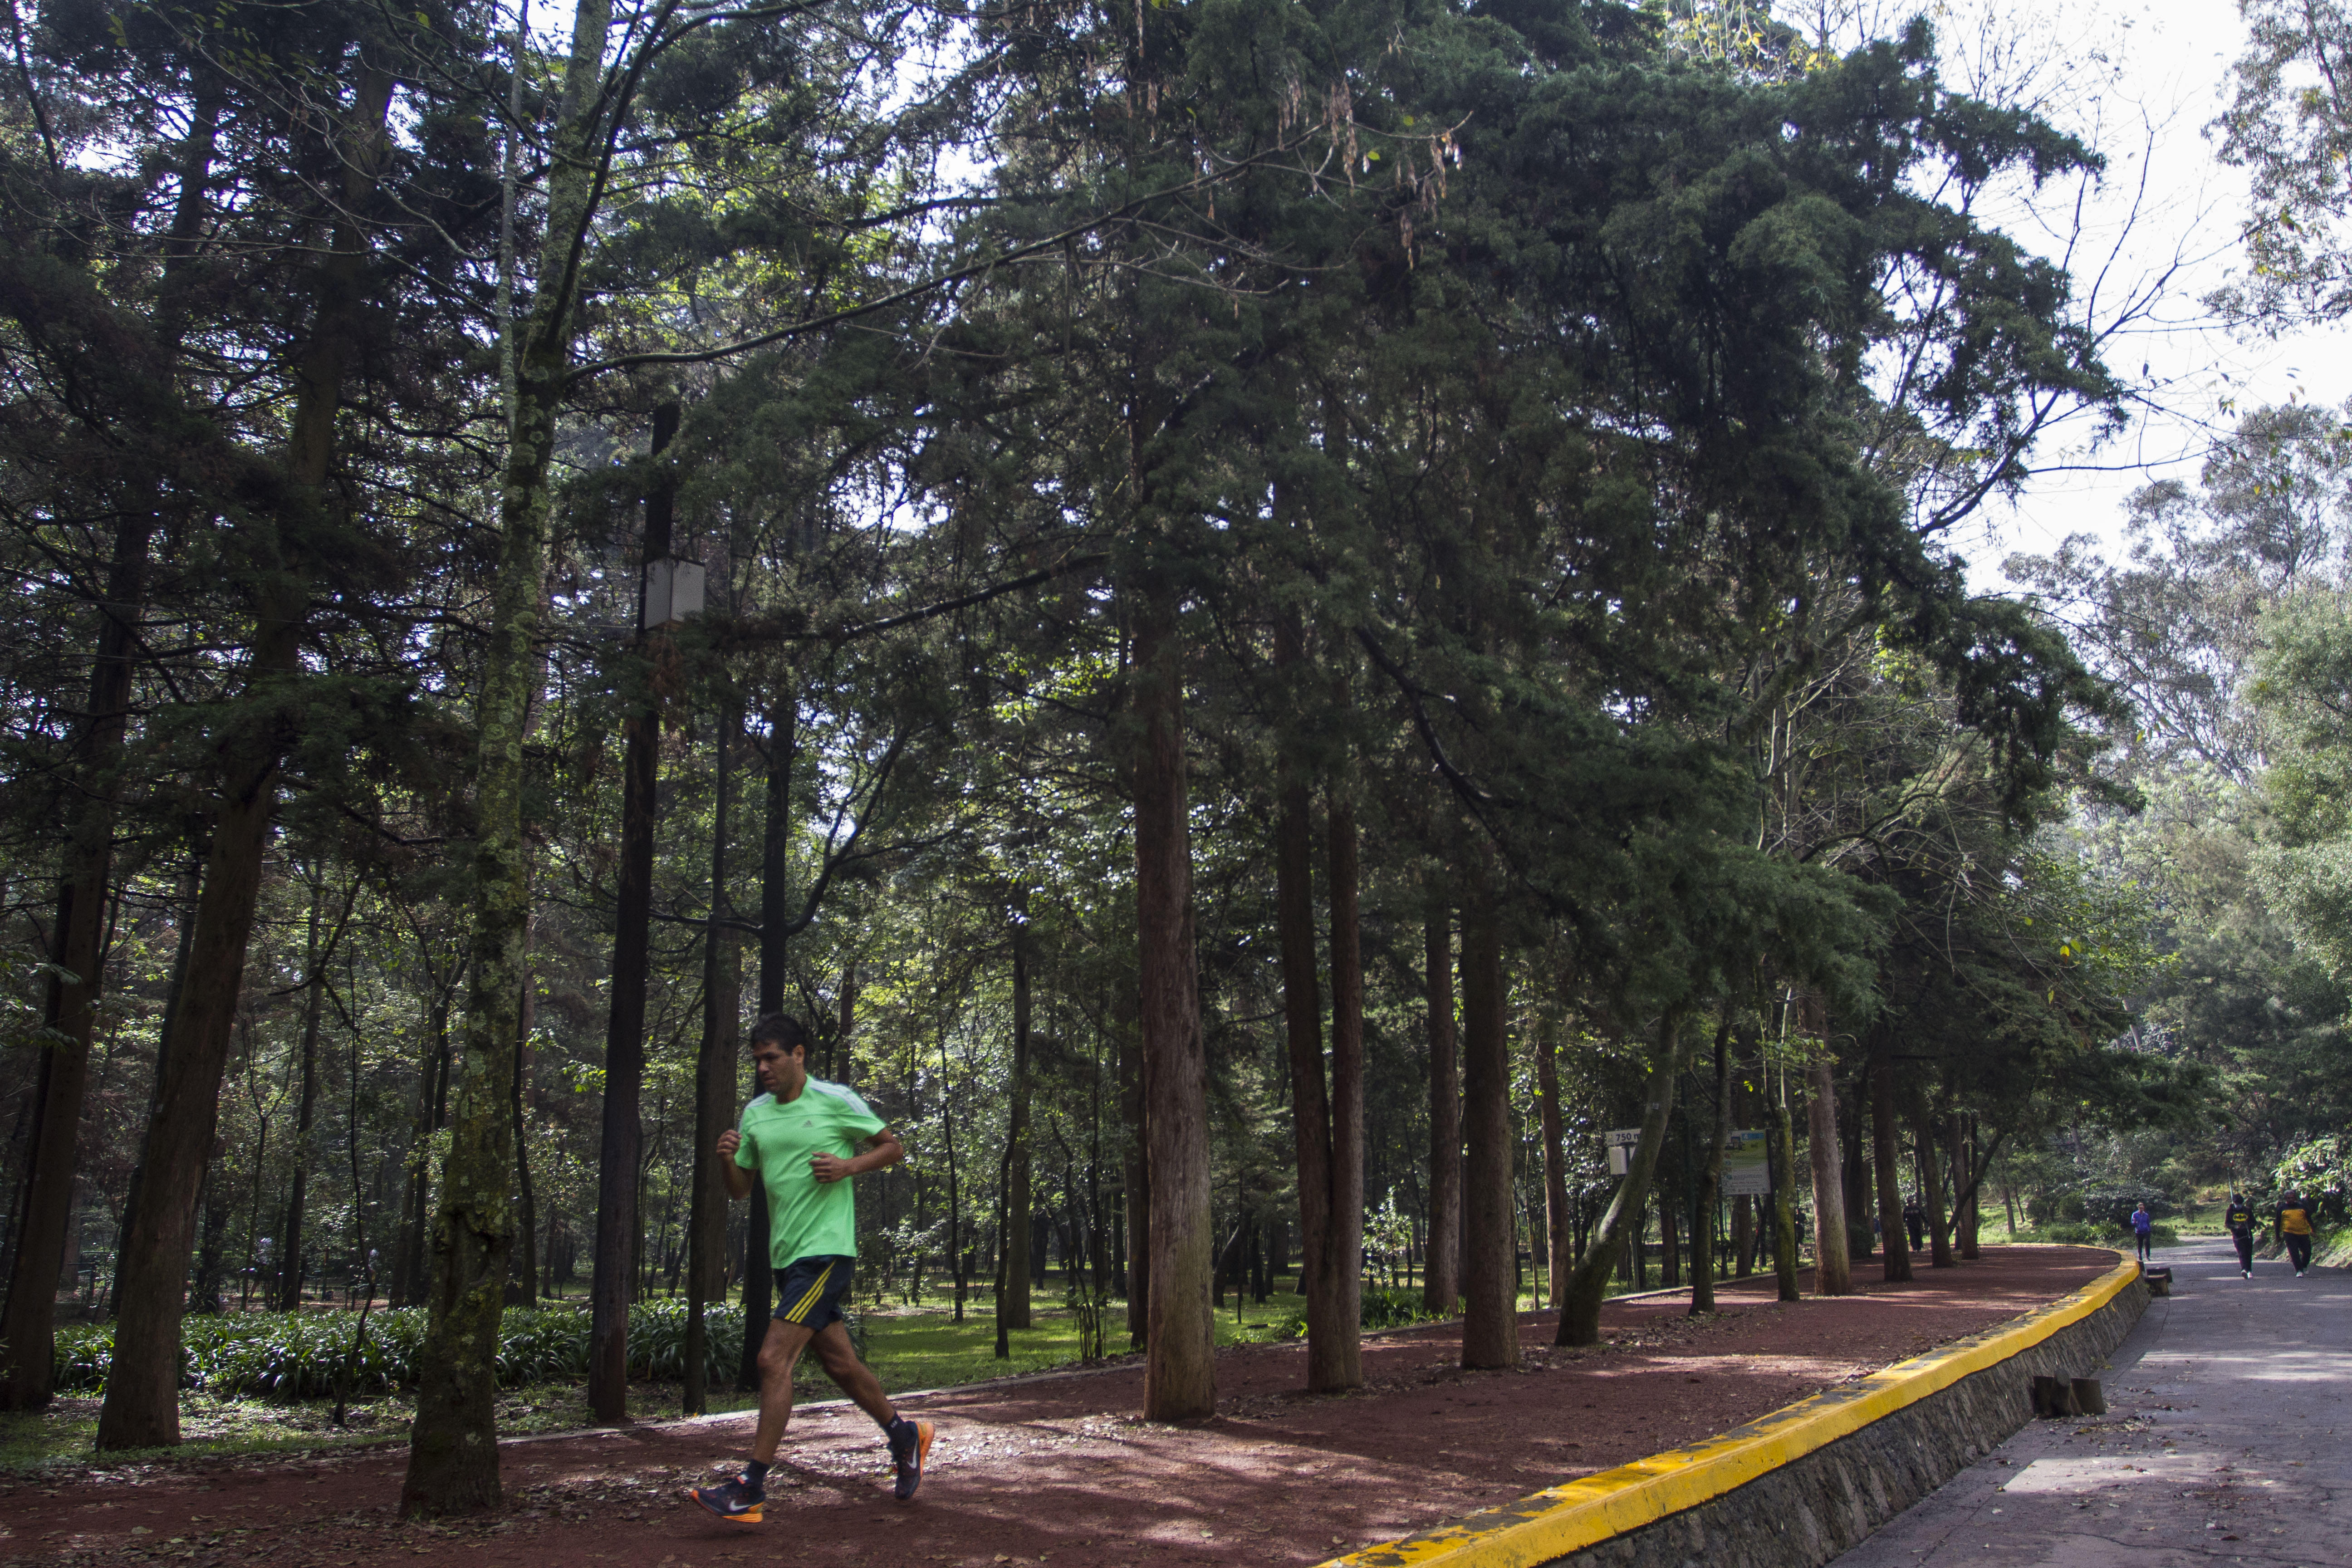 CIUDAD DE MÉXICO, 16NOVIEMBRE2016.- Decenas de personas corren diariamente en el Bosque de Tlalpan, uno de los pulmones naturales de la Ciudad de México.                                                                                                                                                                                                                                                                                                                                                            
FOTO: ISAAC ESQUIVEL /CUARTOSCURO.COM